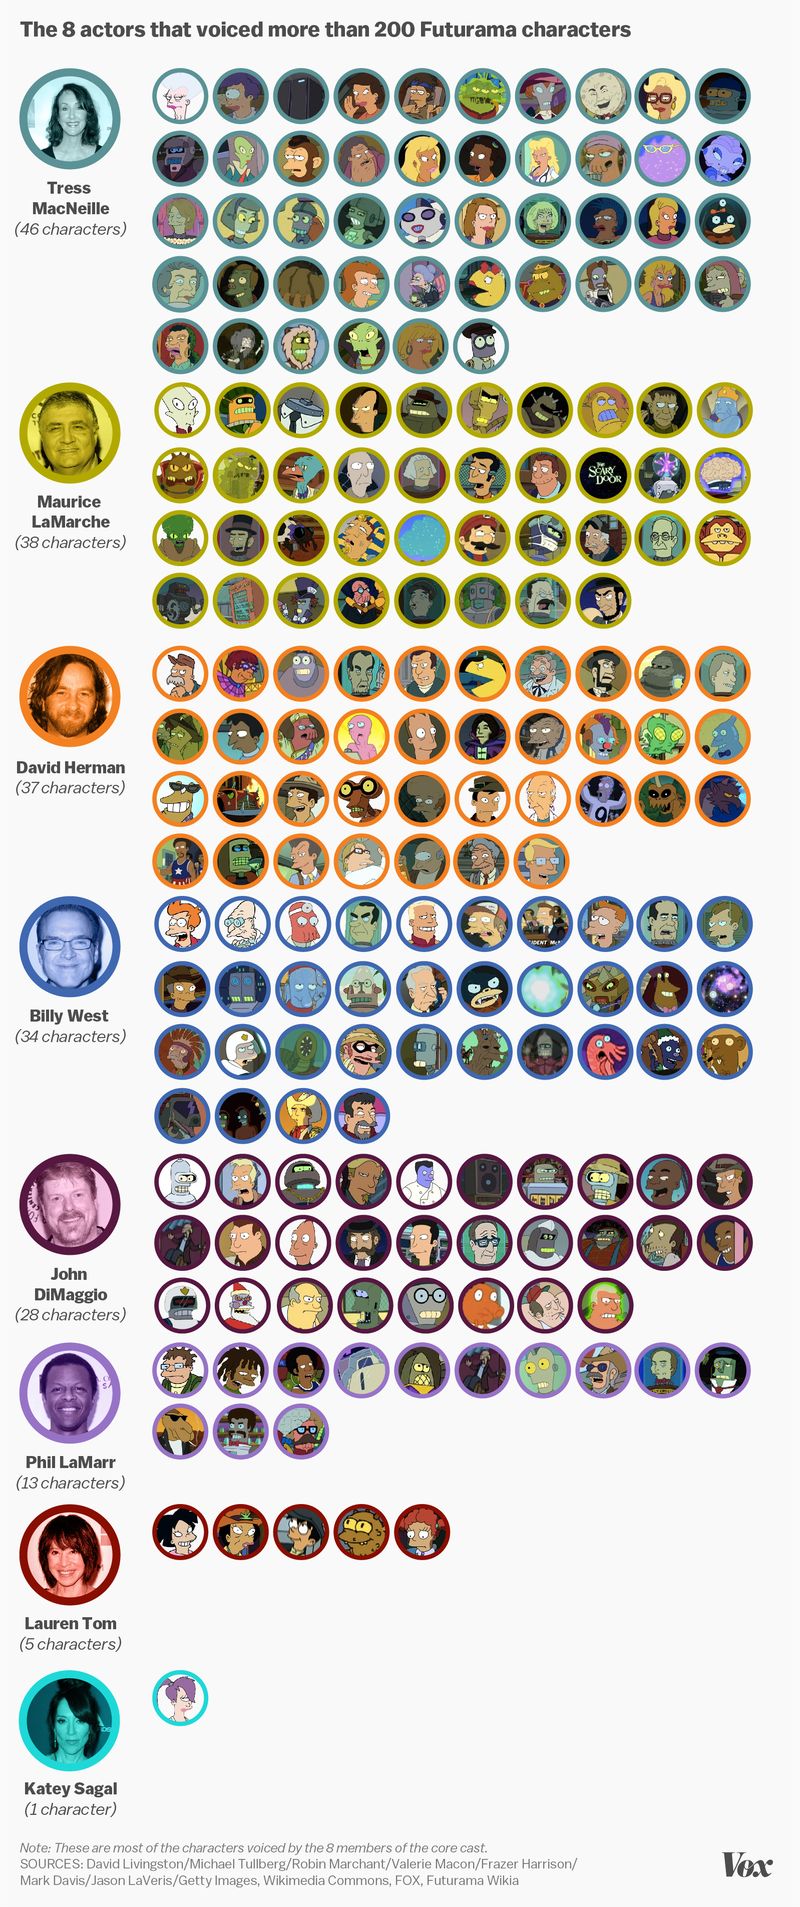 Les 8 acteurs qui ont fait les voix de 200+ personnages de Futurama